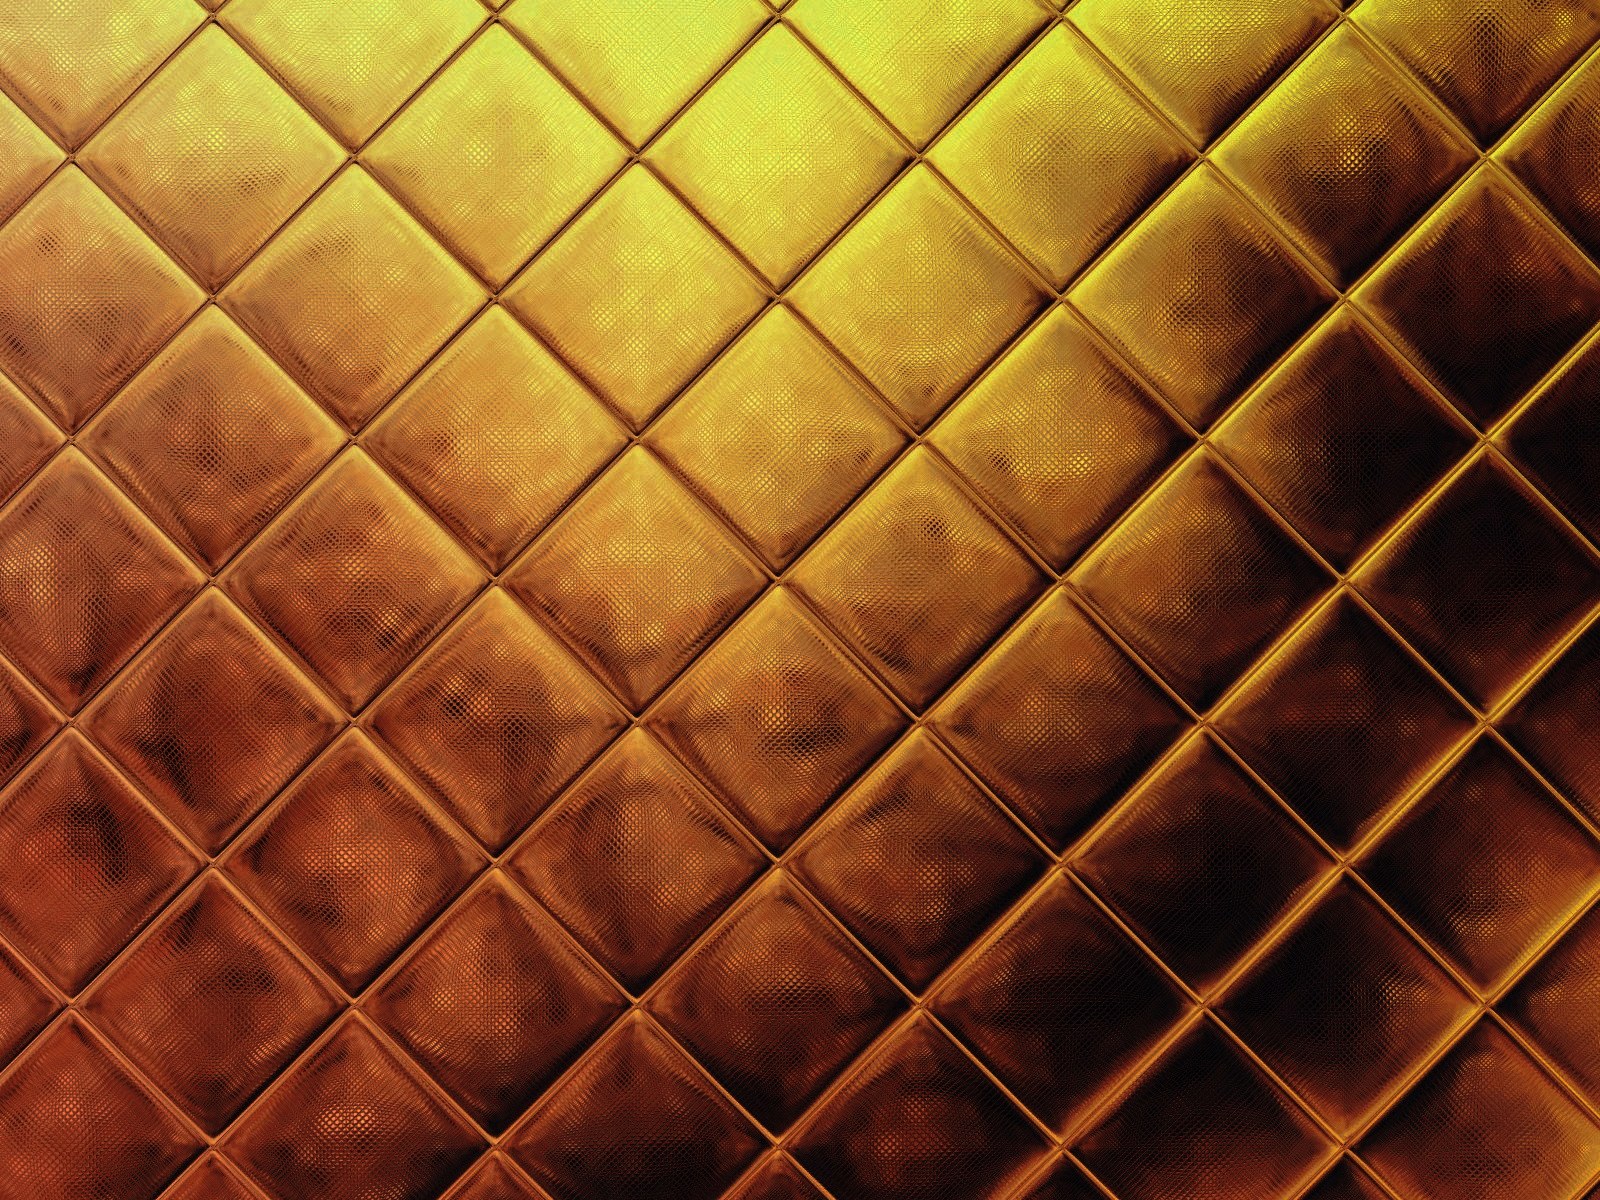 50+] Gold Wallpaper HD - WallpaperSafari